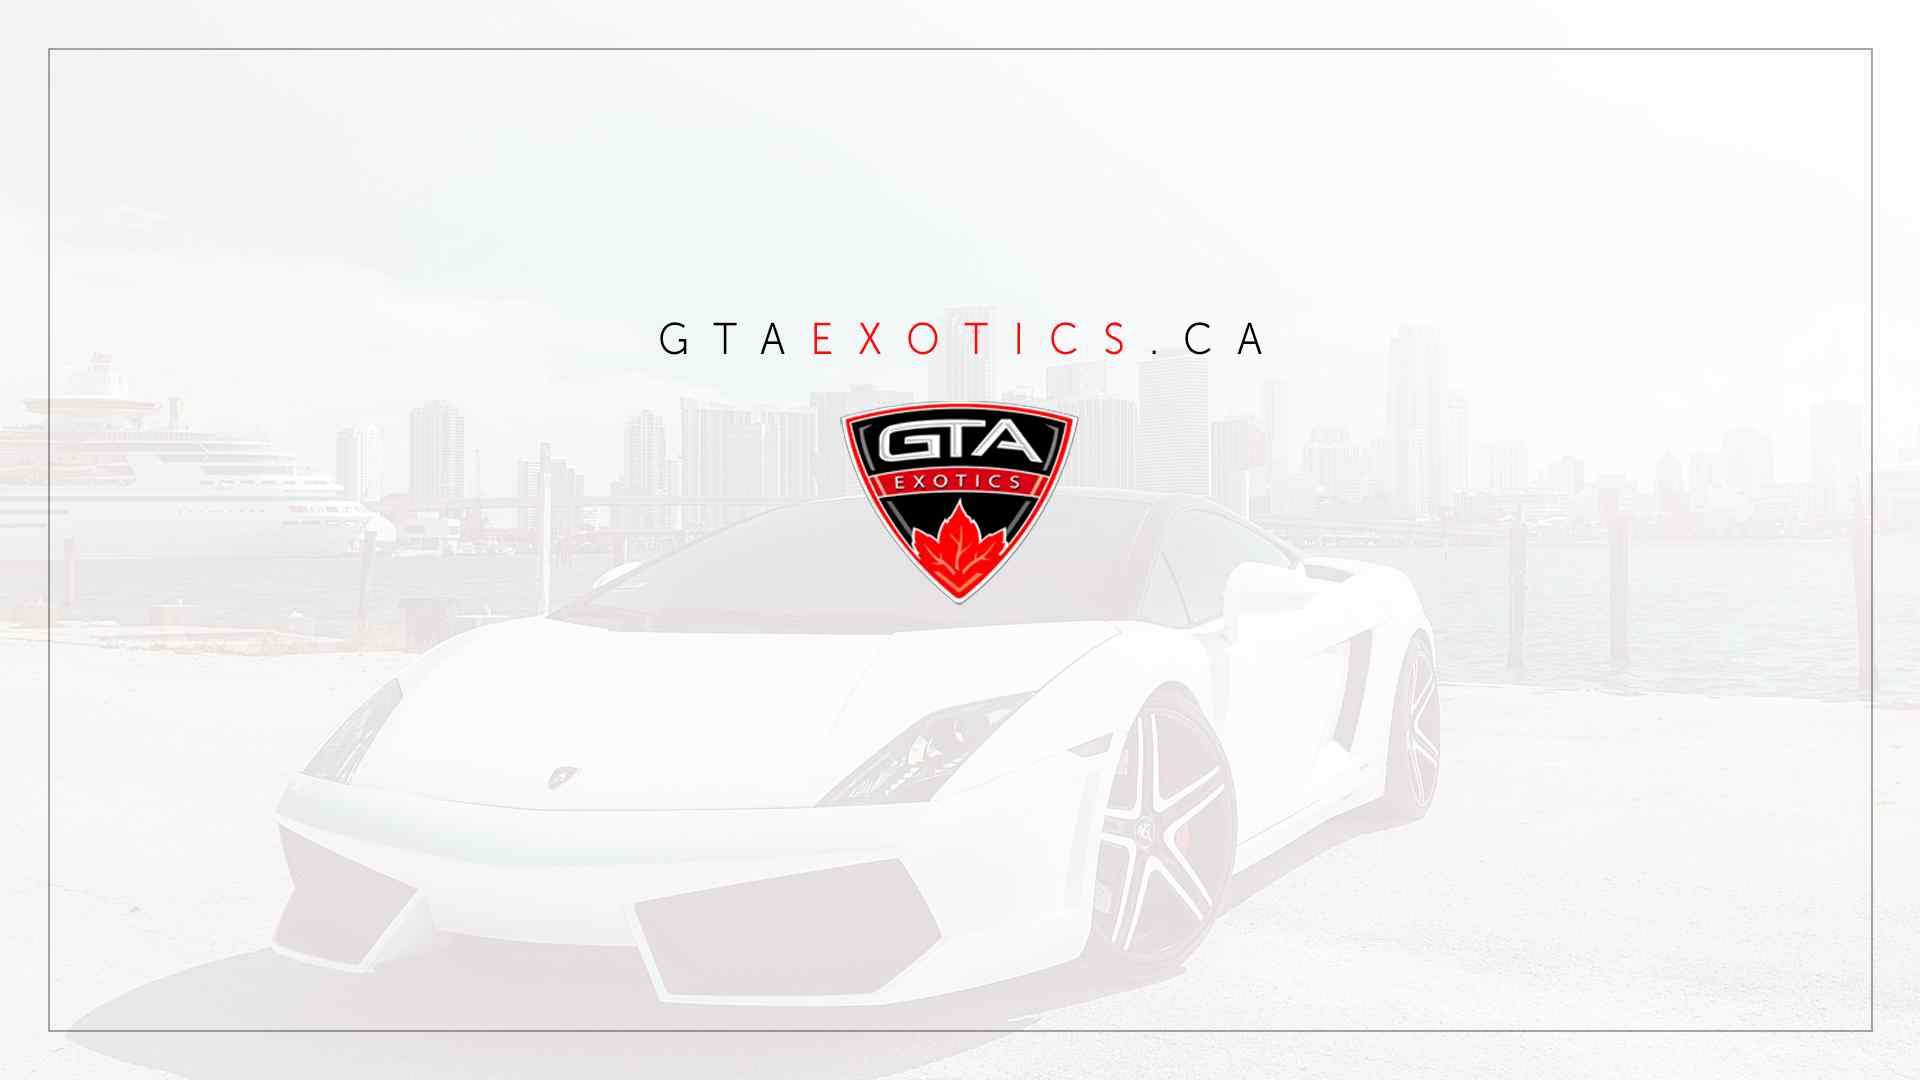 Toronto Exotic Car Rental - GTAExotics.ca